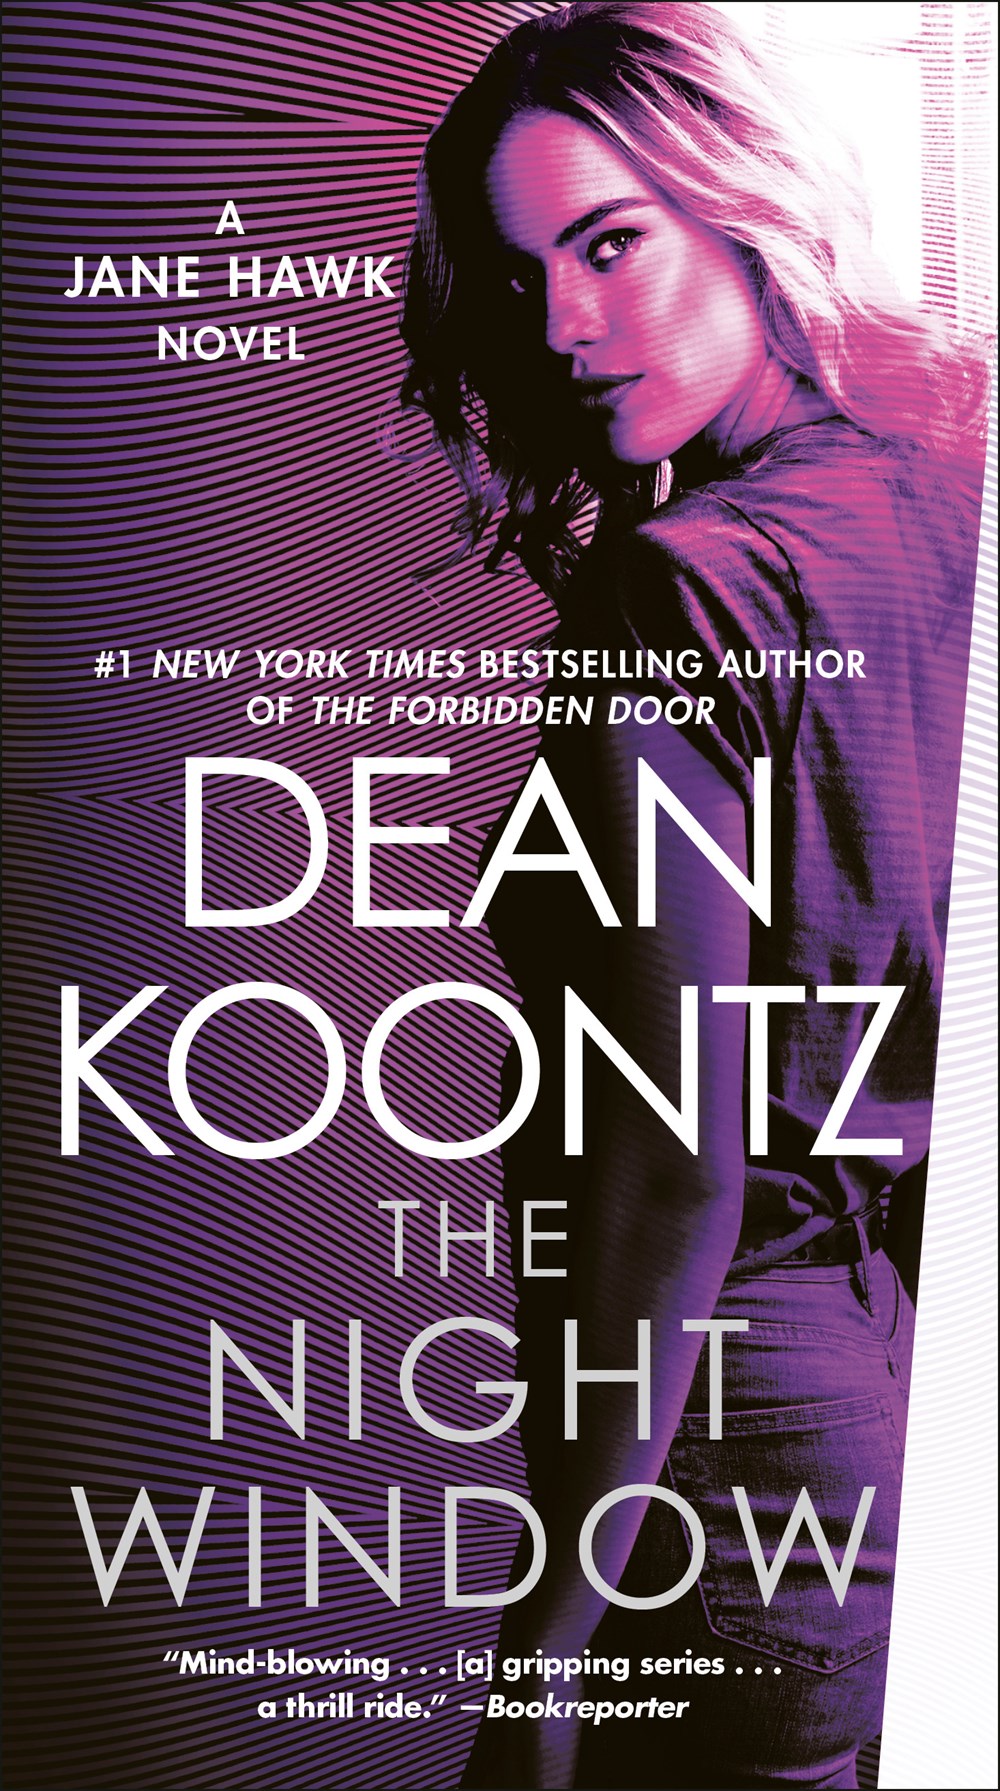 The Night Window: A Jane Hawk Novel (Book 5) by Dean Koontz